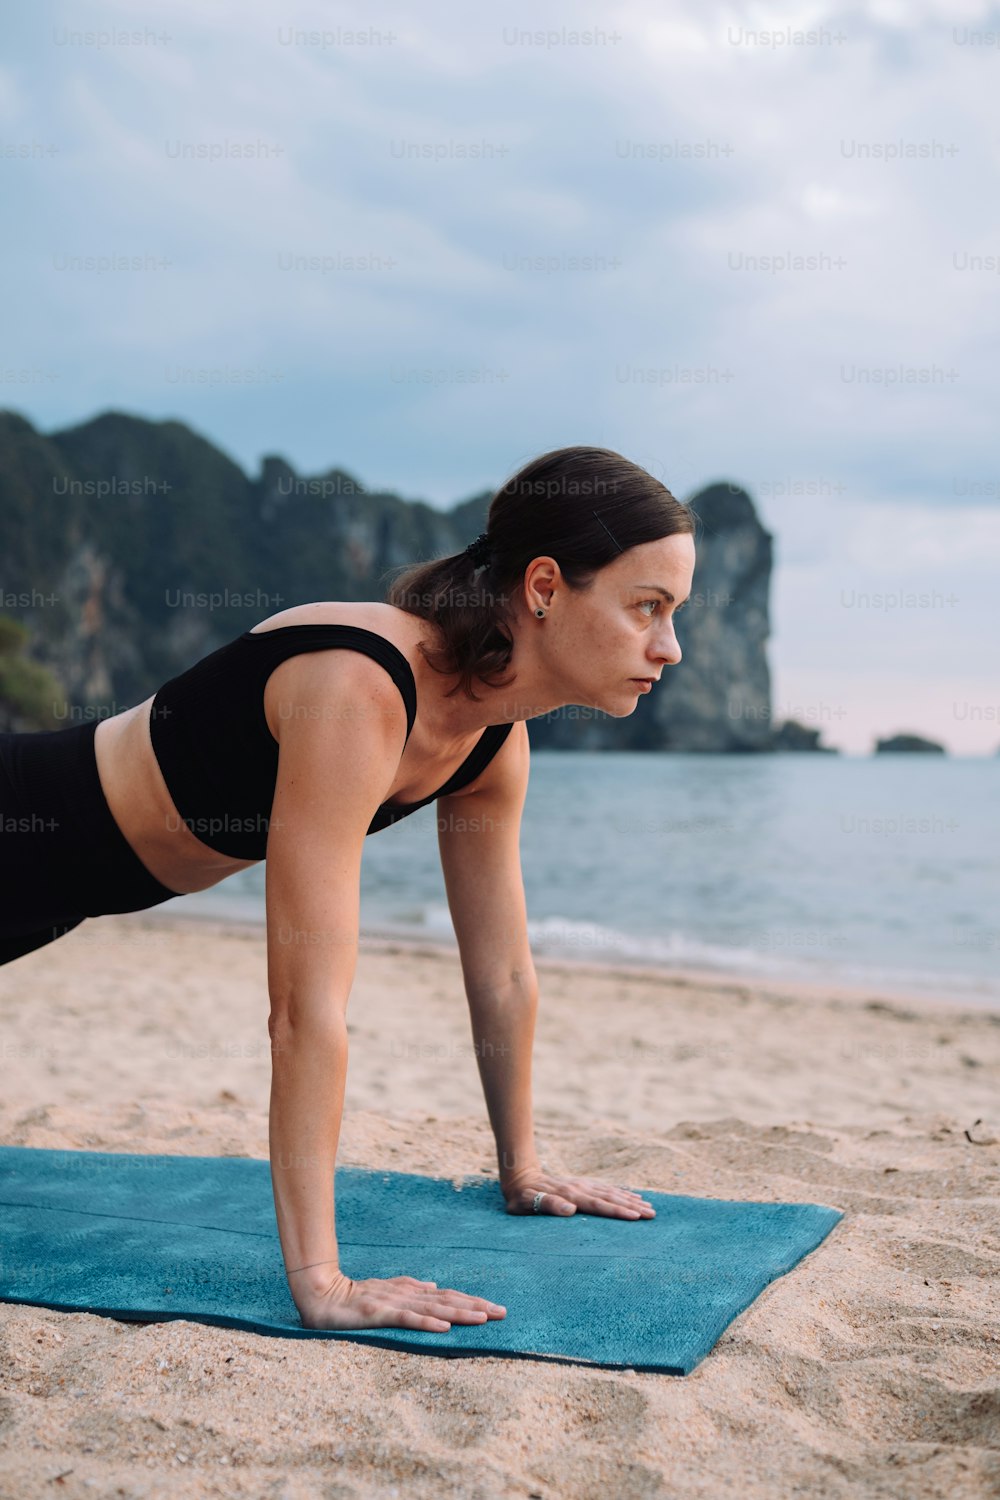 Mulheres Que Fazem Yoga Fotos  Baixe imagens gratuitas na Unsplash